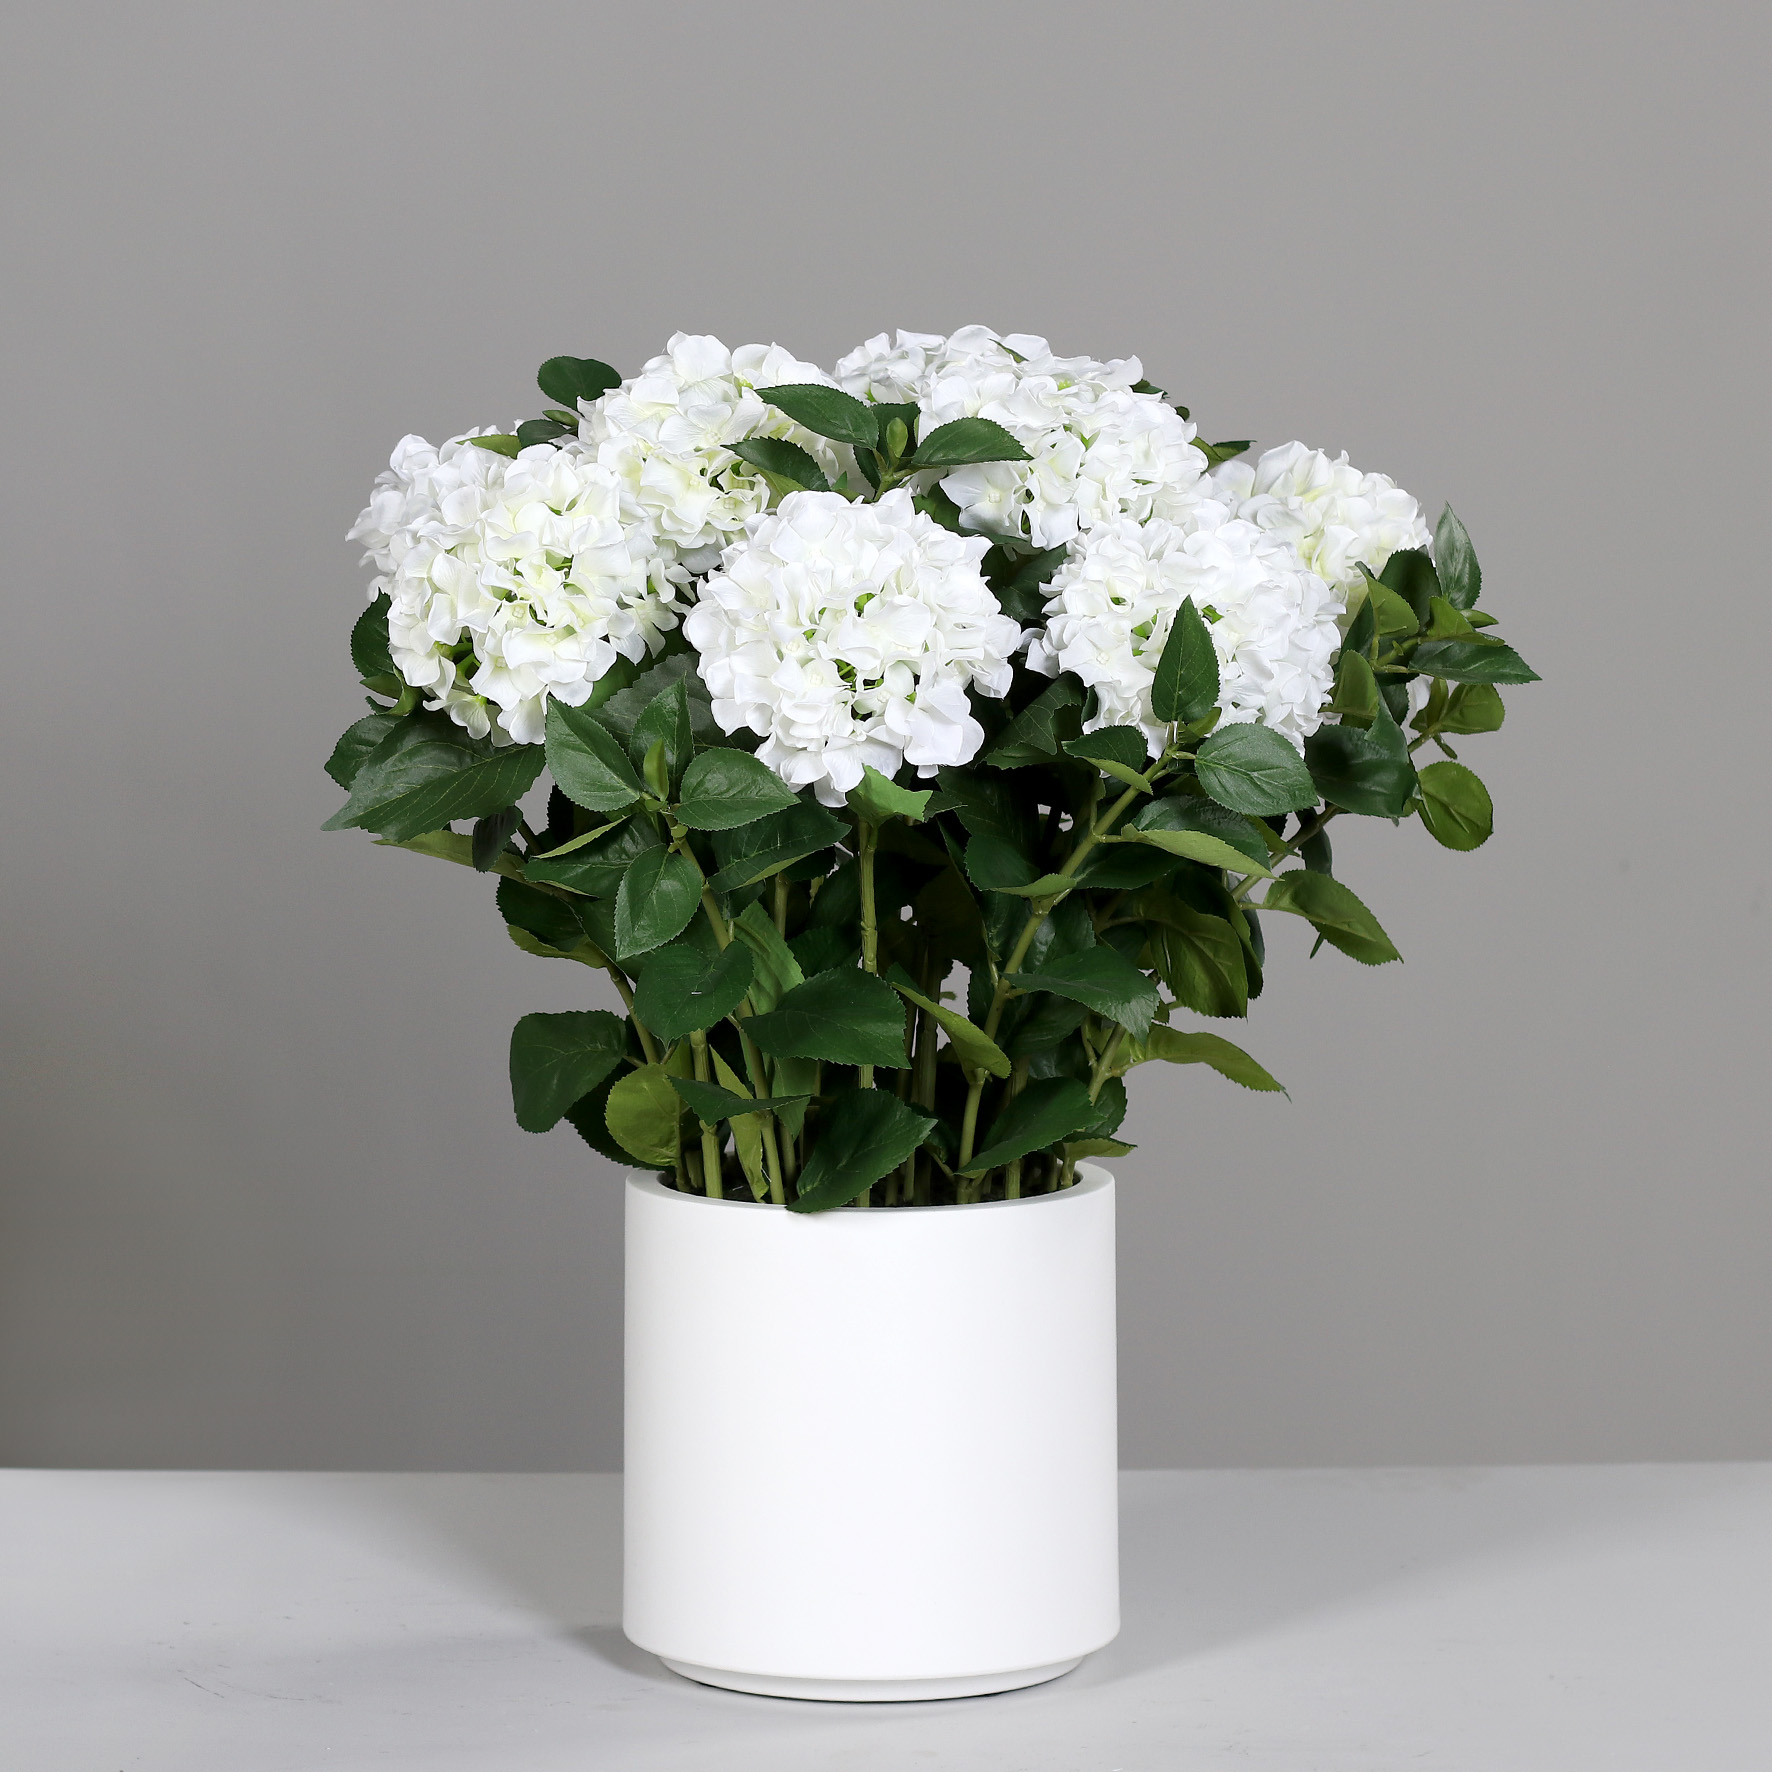 Hortensientopf 75x65cm weiß im weißen Topf DP künstliche Hortensie Blumen Pflanzen Kunstpflanzen Kunstblumen